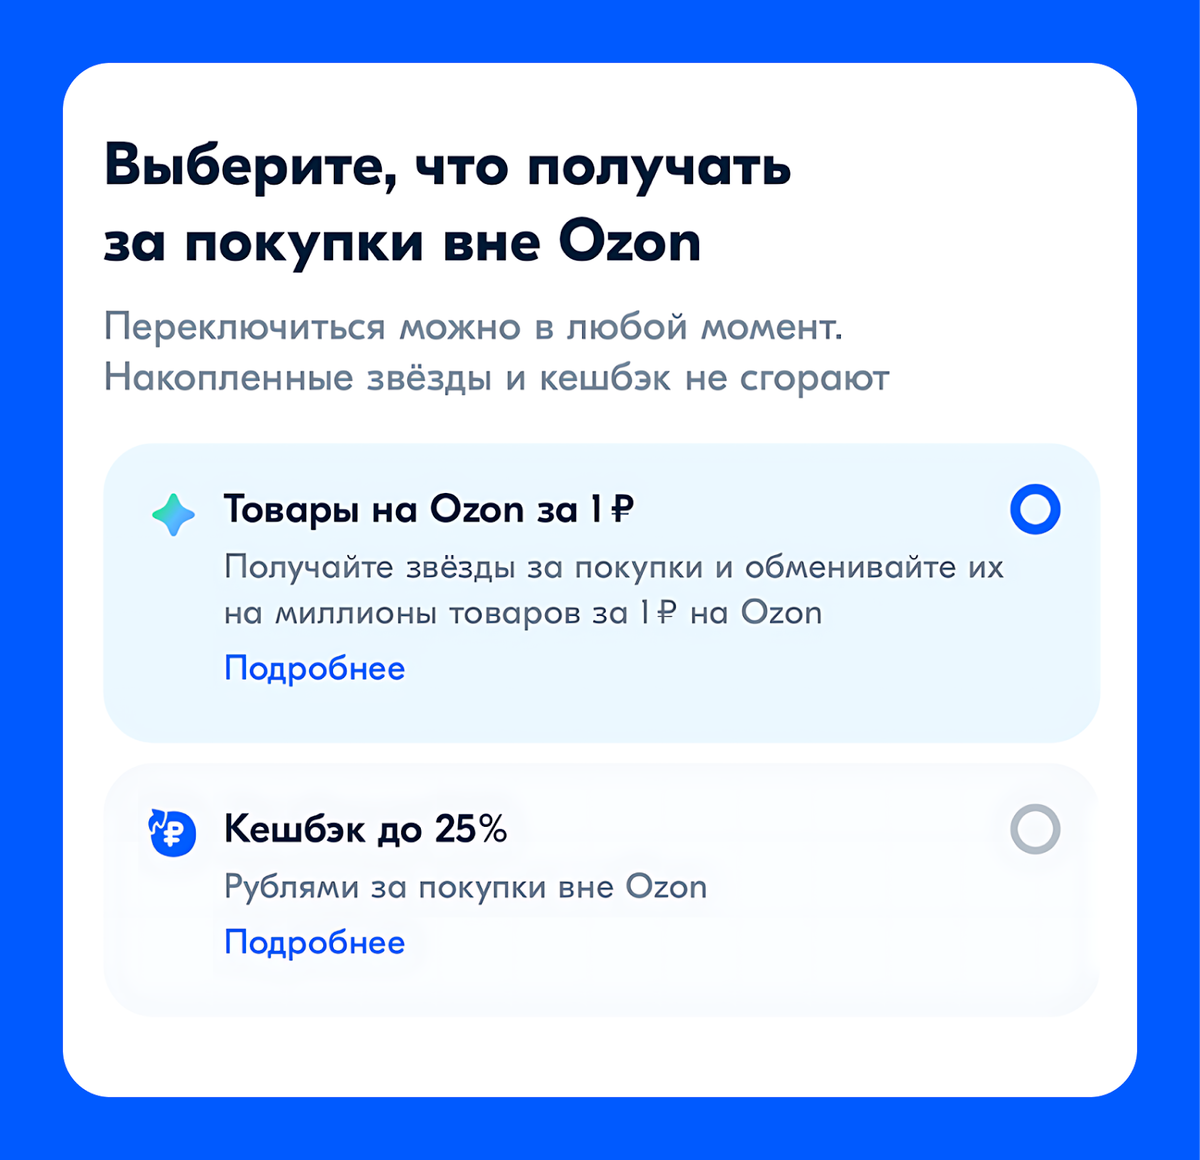 Для клиентов Ozon Банка доступна новая программа лояльности — «Товары на Ozon за 1 рубль». Теперь за траты вне маркетплейса Ozon можно получать товары брендов за 1 рубль.-2